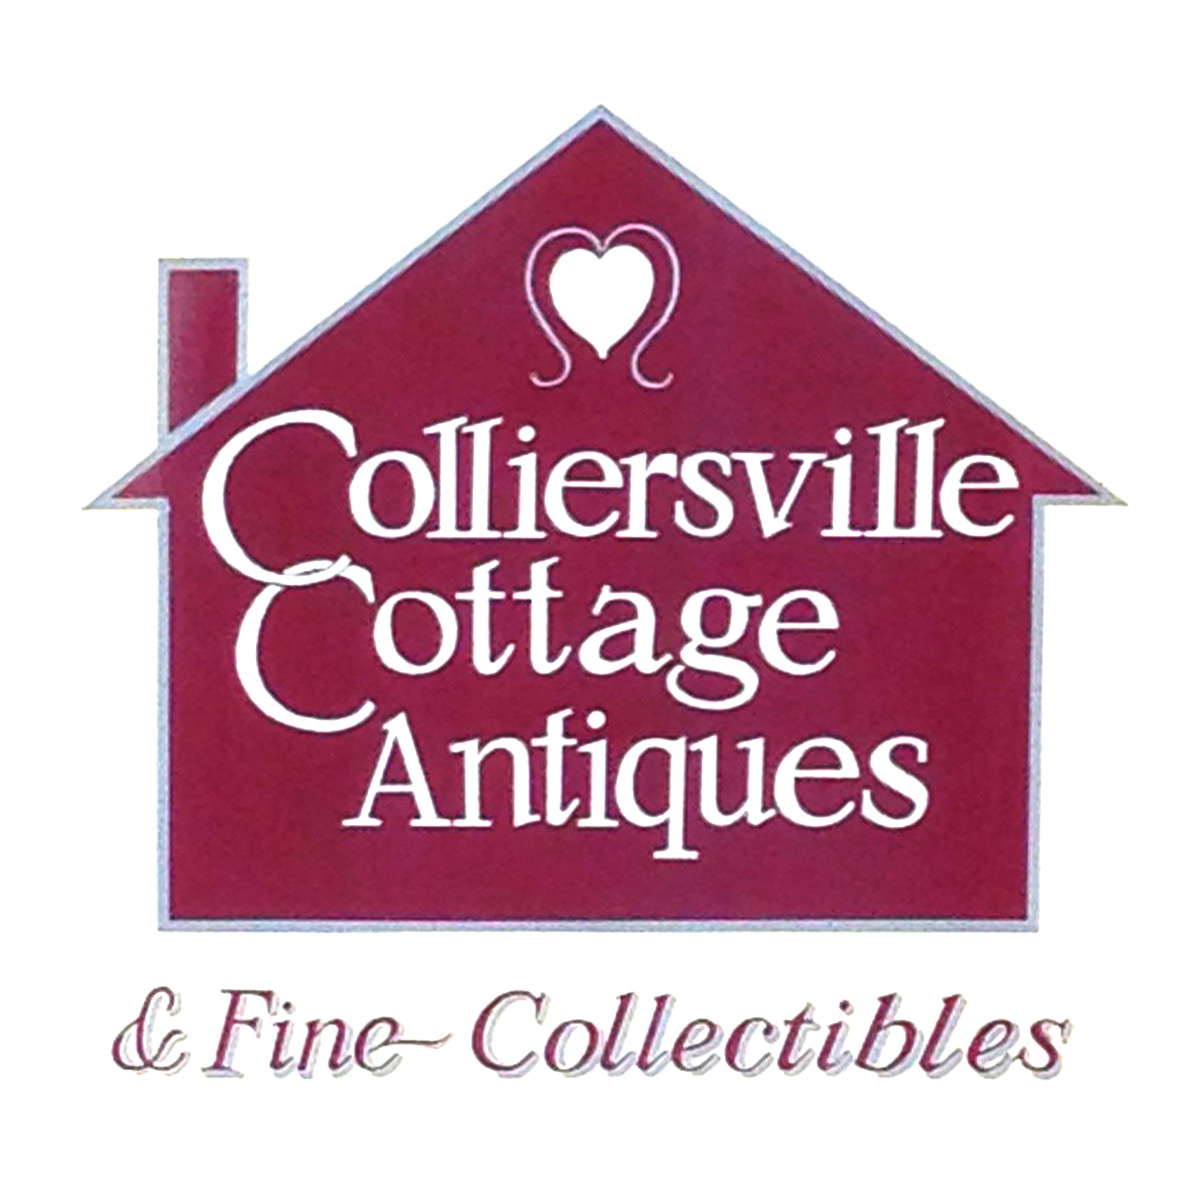 Colliersville Cottage Antiques Logo